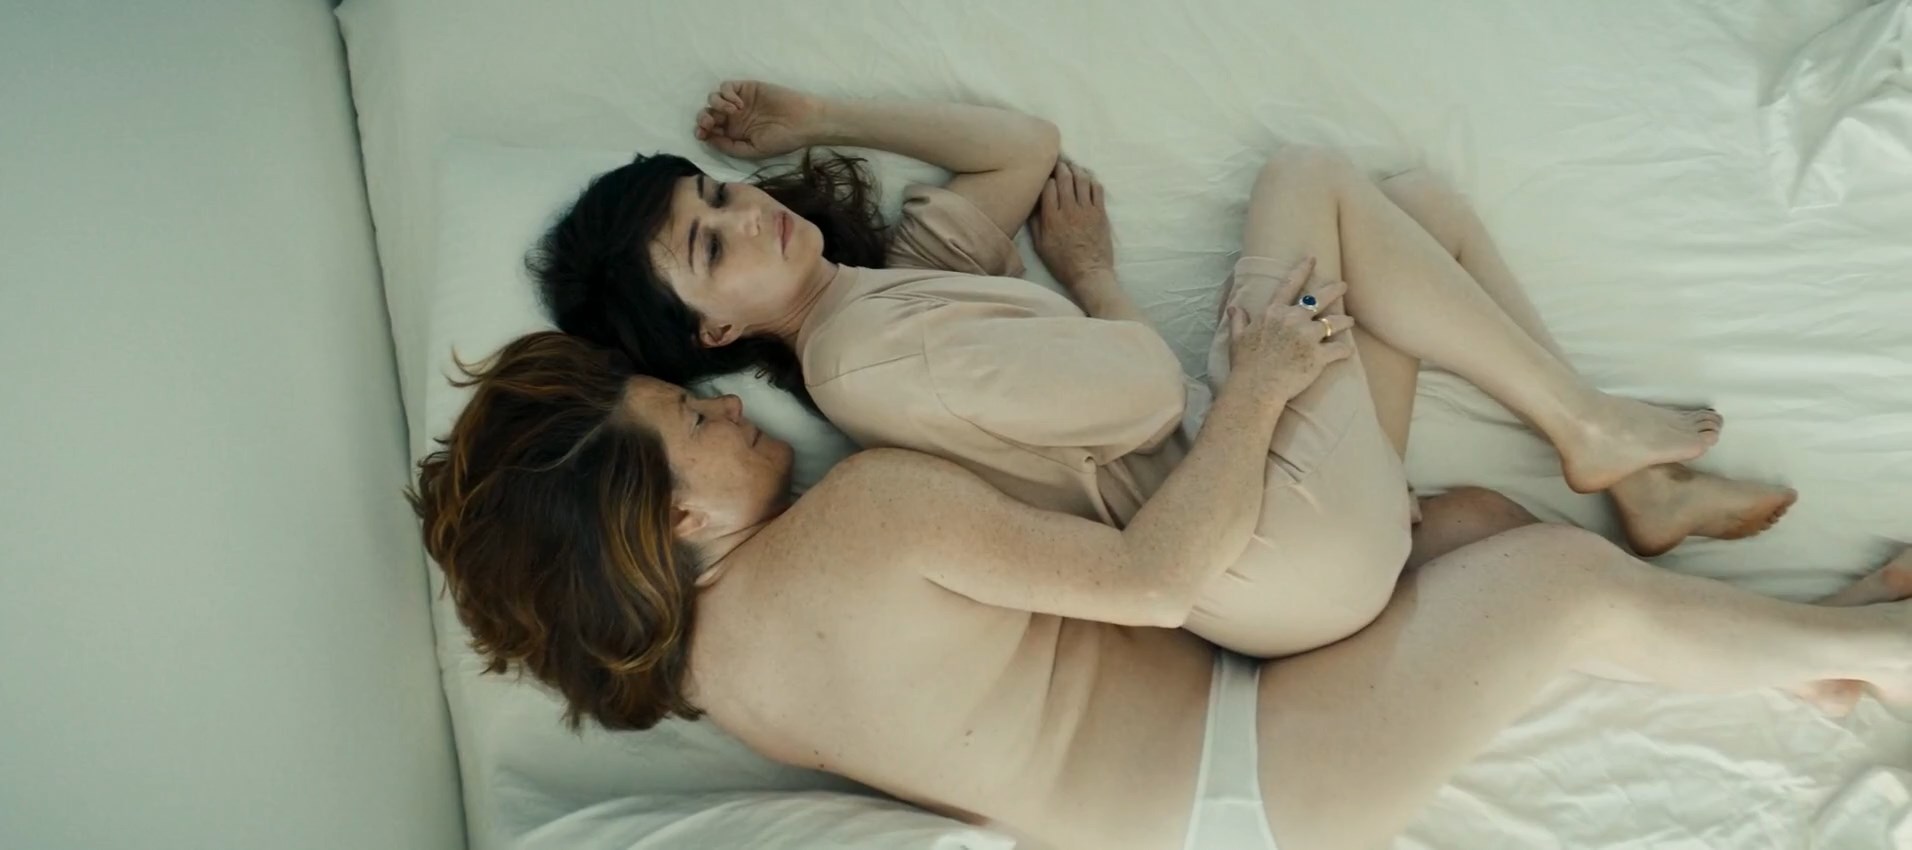 2019 Sex Videos - Watch Online - Carice van Houten - Instinct (2019) HD 1080p